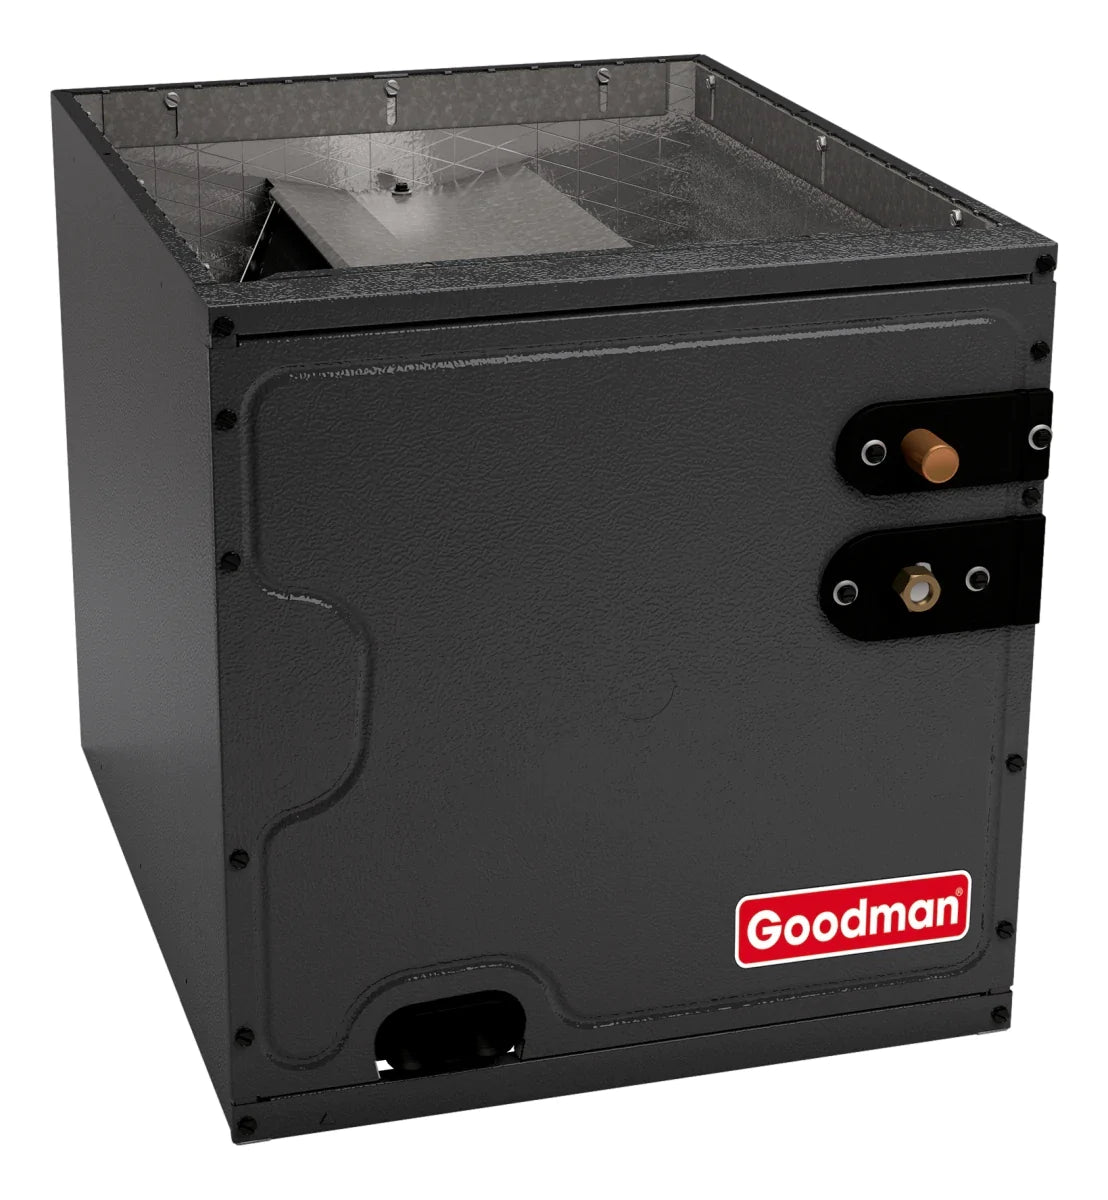 Goodman 3 TON 15 SEER2 Upflow AC system with 80% AFUE 80k BTU 2 stage Low NOx Furnace (GSXM403610, CAPTA4230C4, GMVC800805CX)